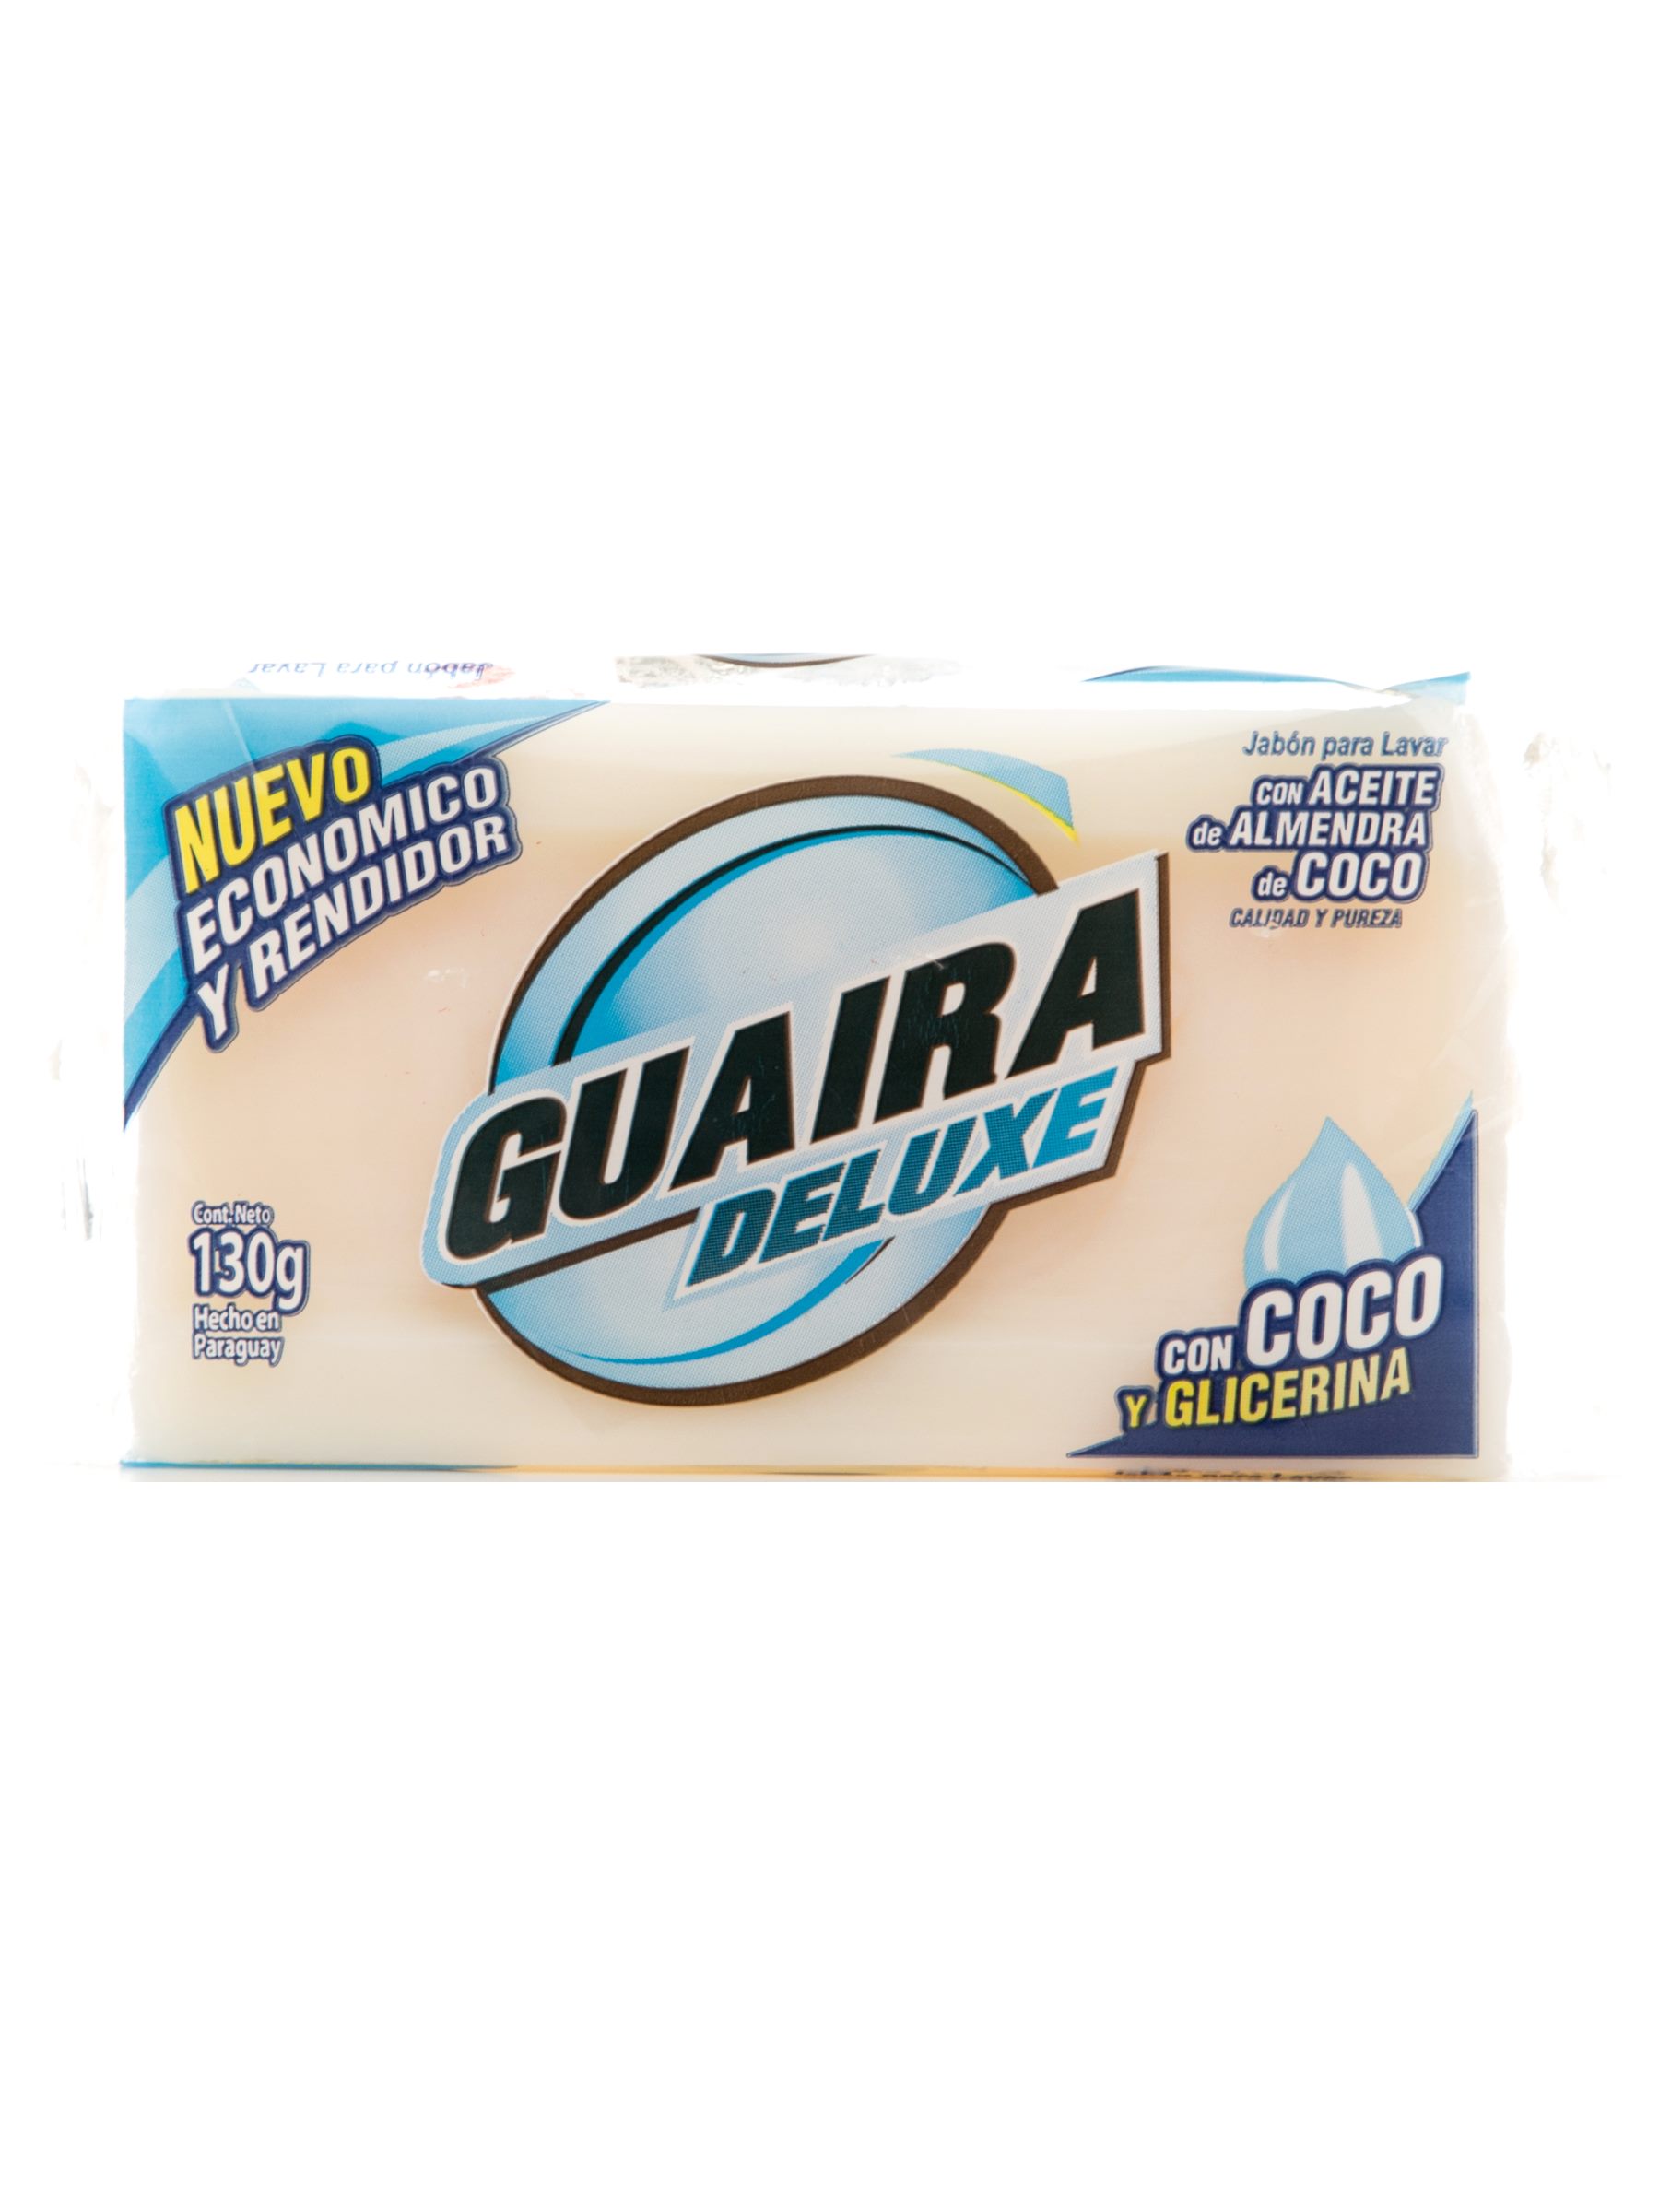 Exquisito veredicto Montaña Kilauea Jabón en barra deluxe para lavar con coco y glicerina 130 Grs. Guaira -  Soldo